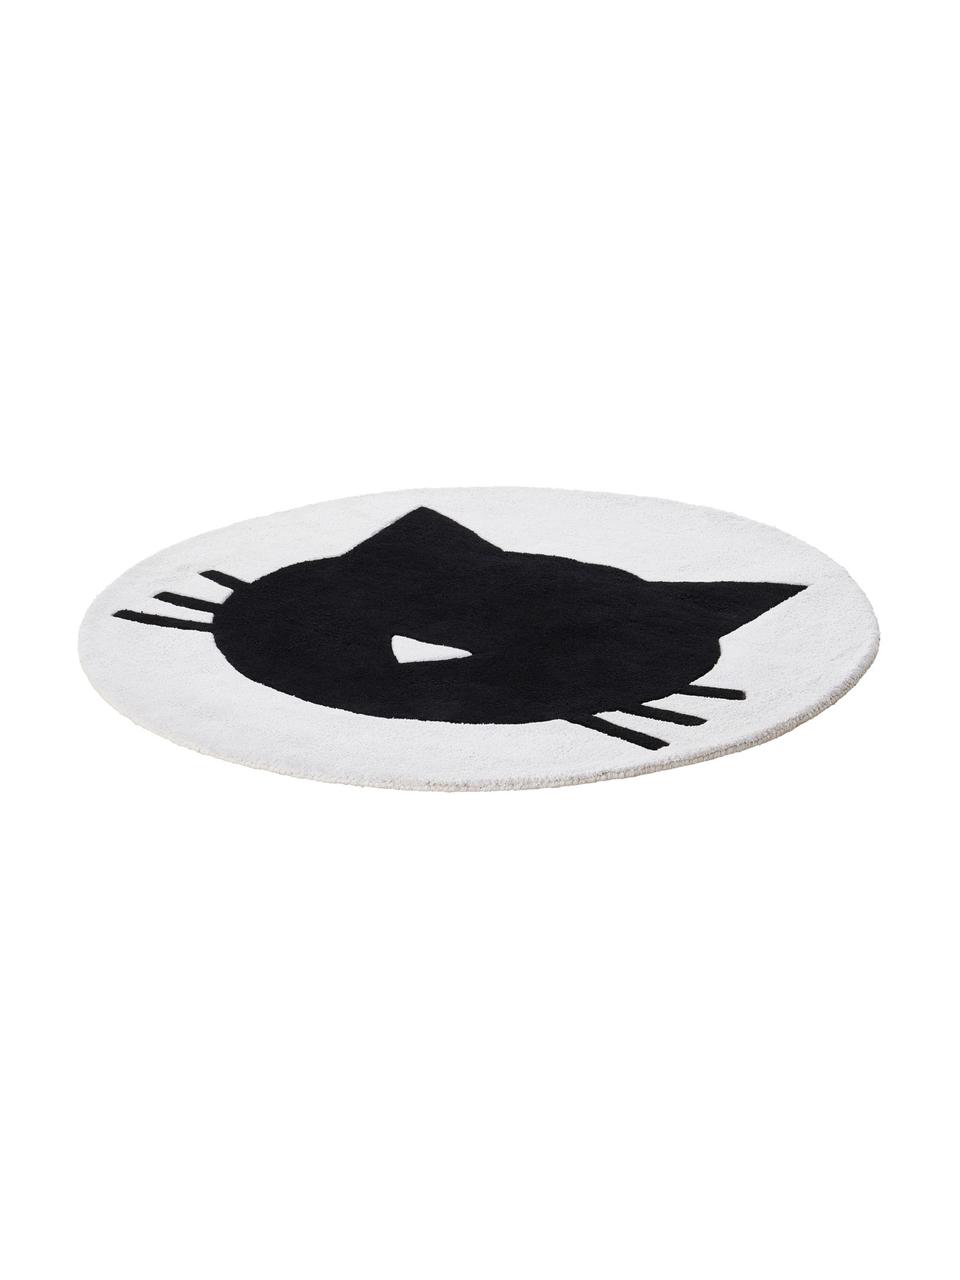 Tapis enfant rond motif chat El Gato, 100 % coton, 1200 g/m², Blanc, Ø 120 cm (taille S)